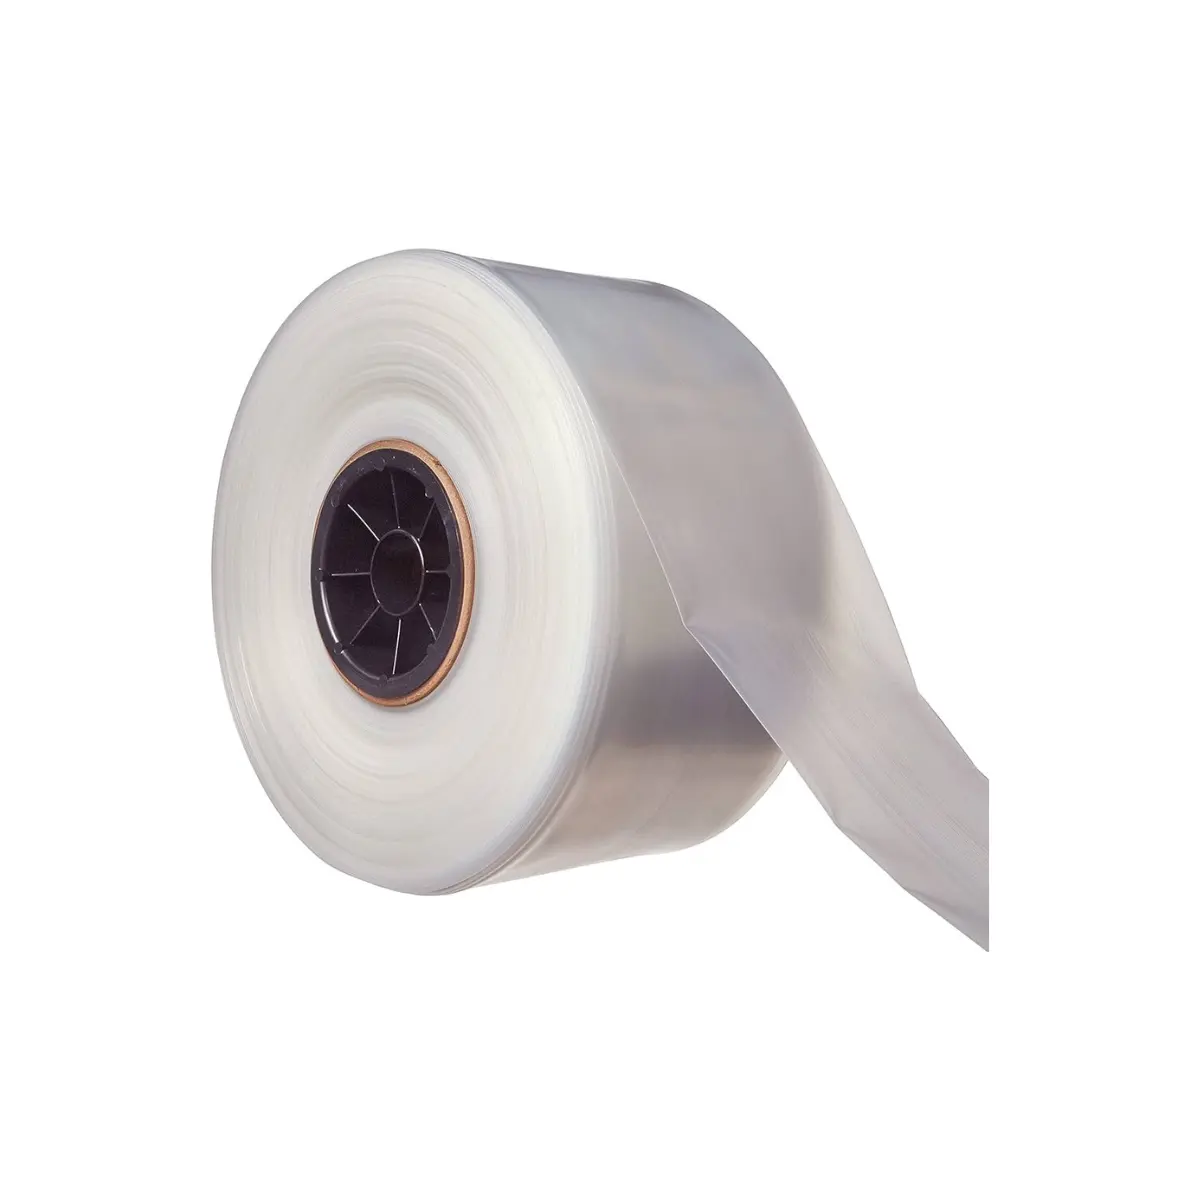 Le rouleau de tube en poly transparent permet d'obtenir des sacs blancs transparents de haute qualité ou de couleur unie pour répondre aux besoins spécifiques fabriqués au Vietnam